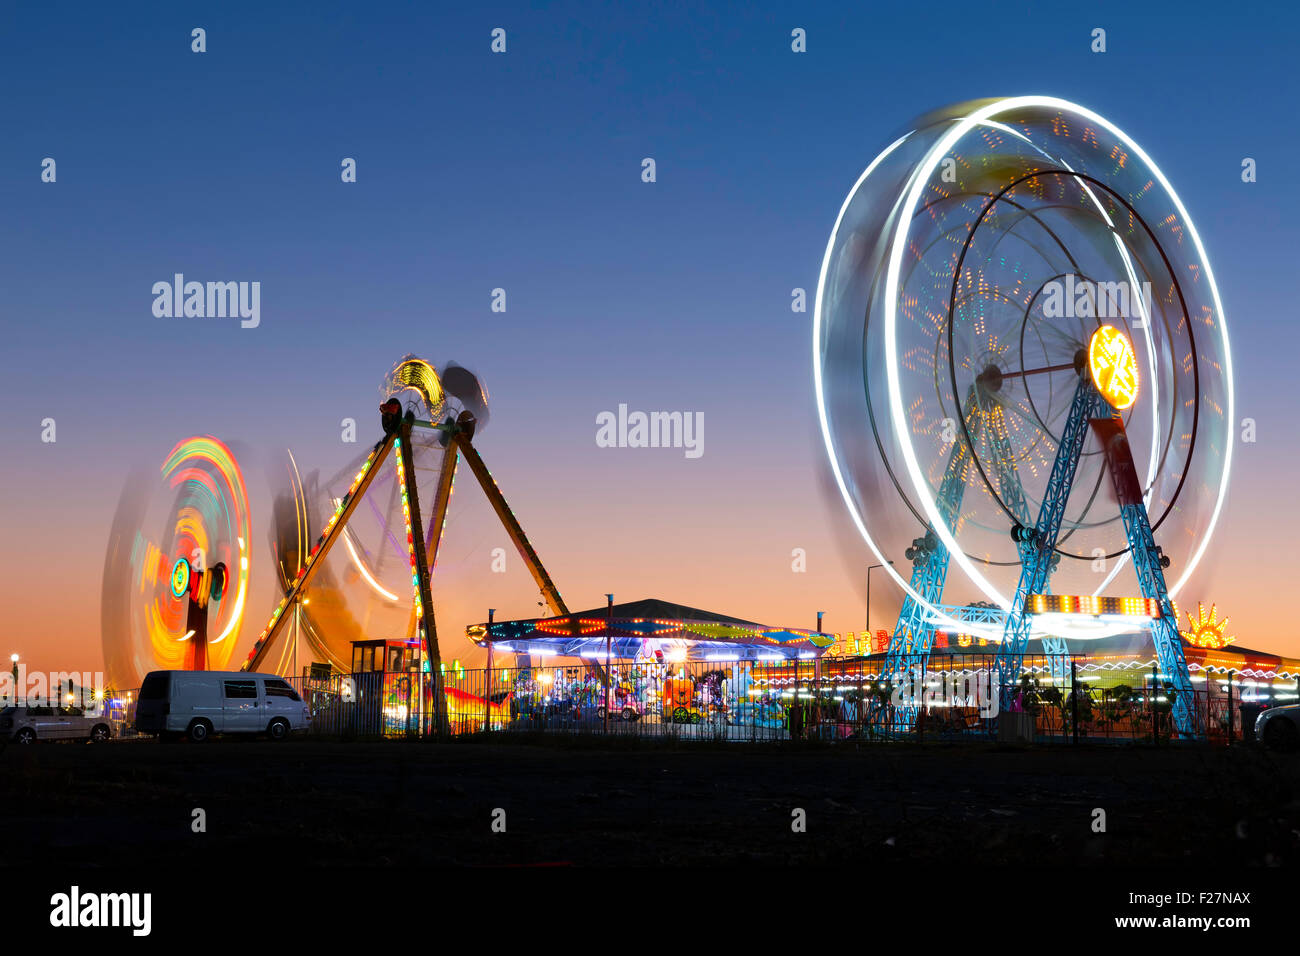 Carnaval haut en couleurs grande roue et gondola filature dans motion blurred au crépuscule dans un parc d'amusement Banque D'Images